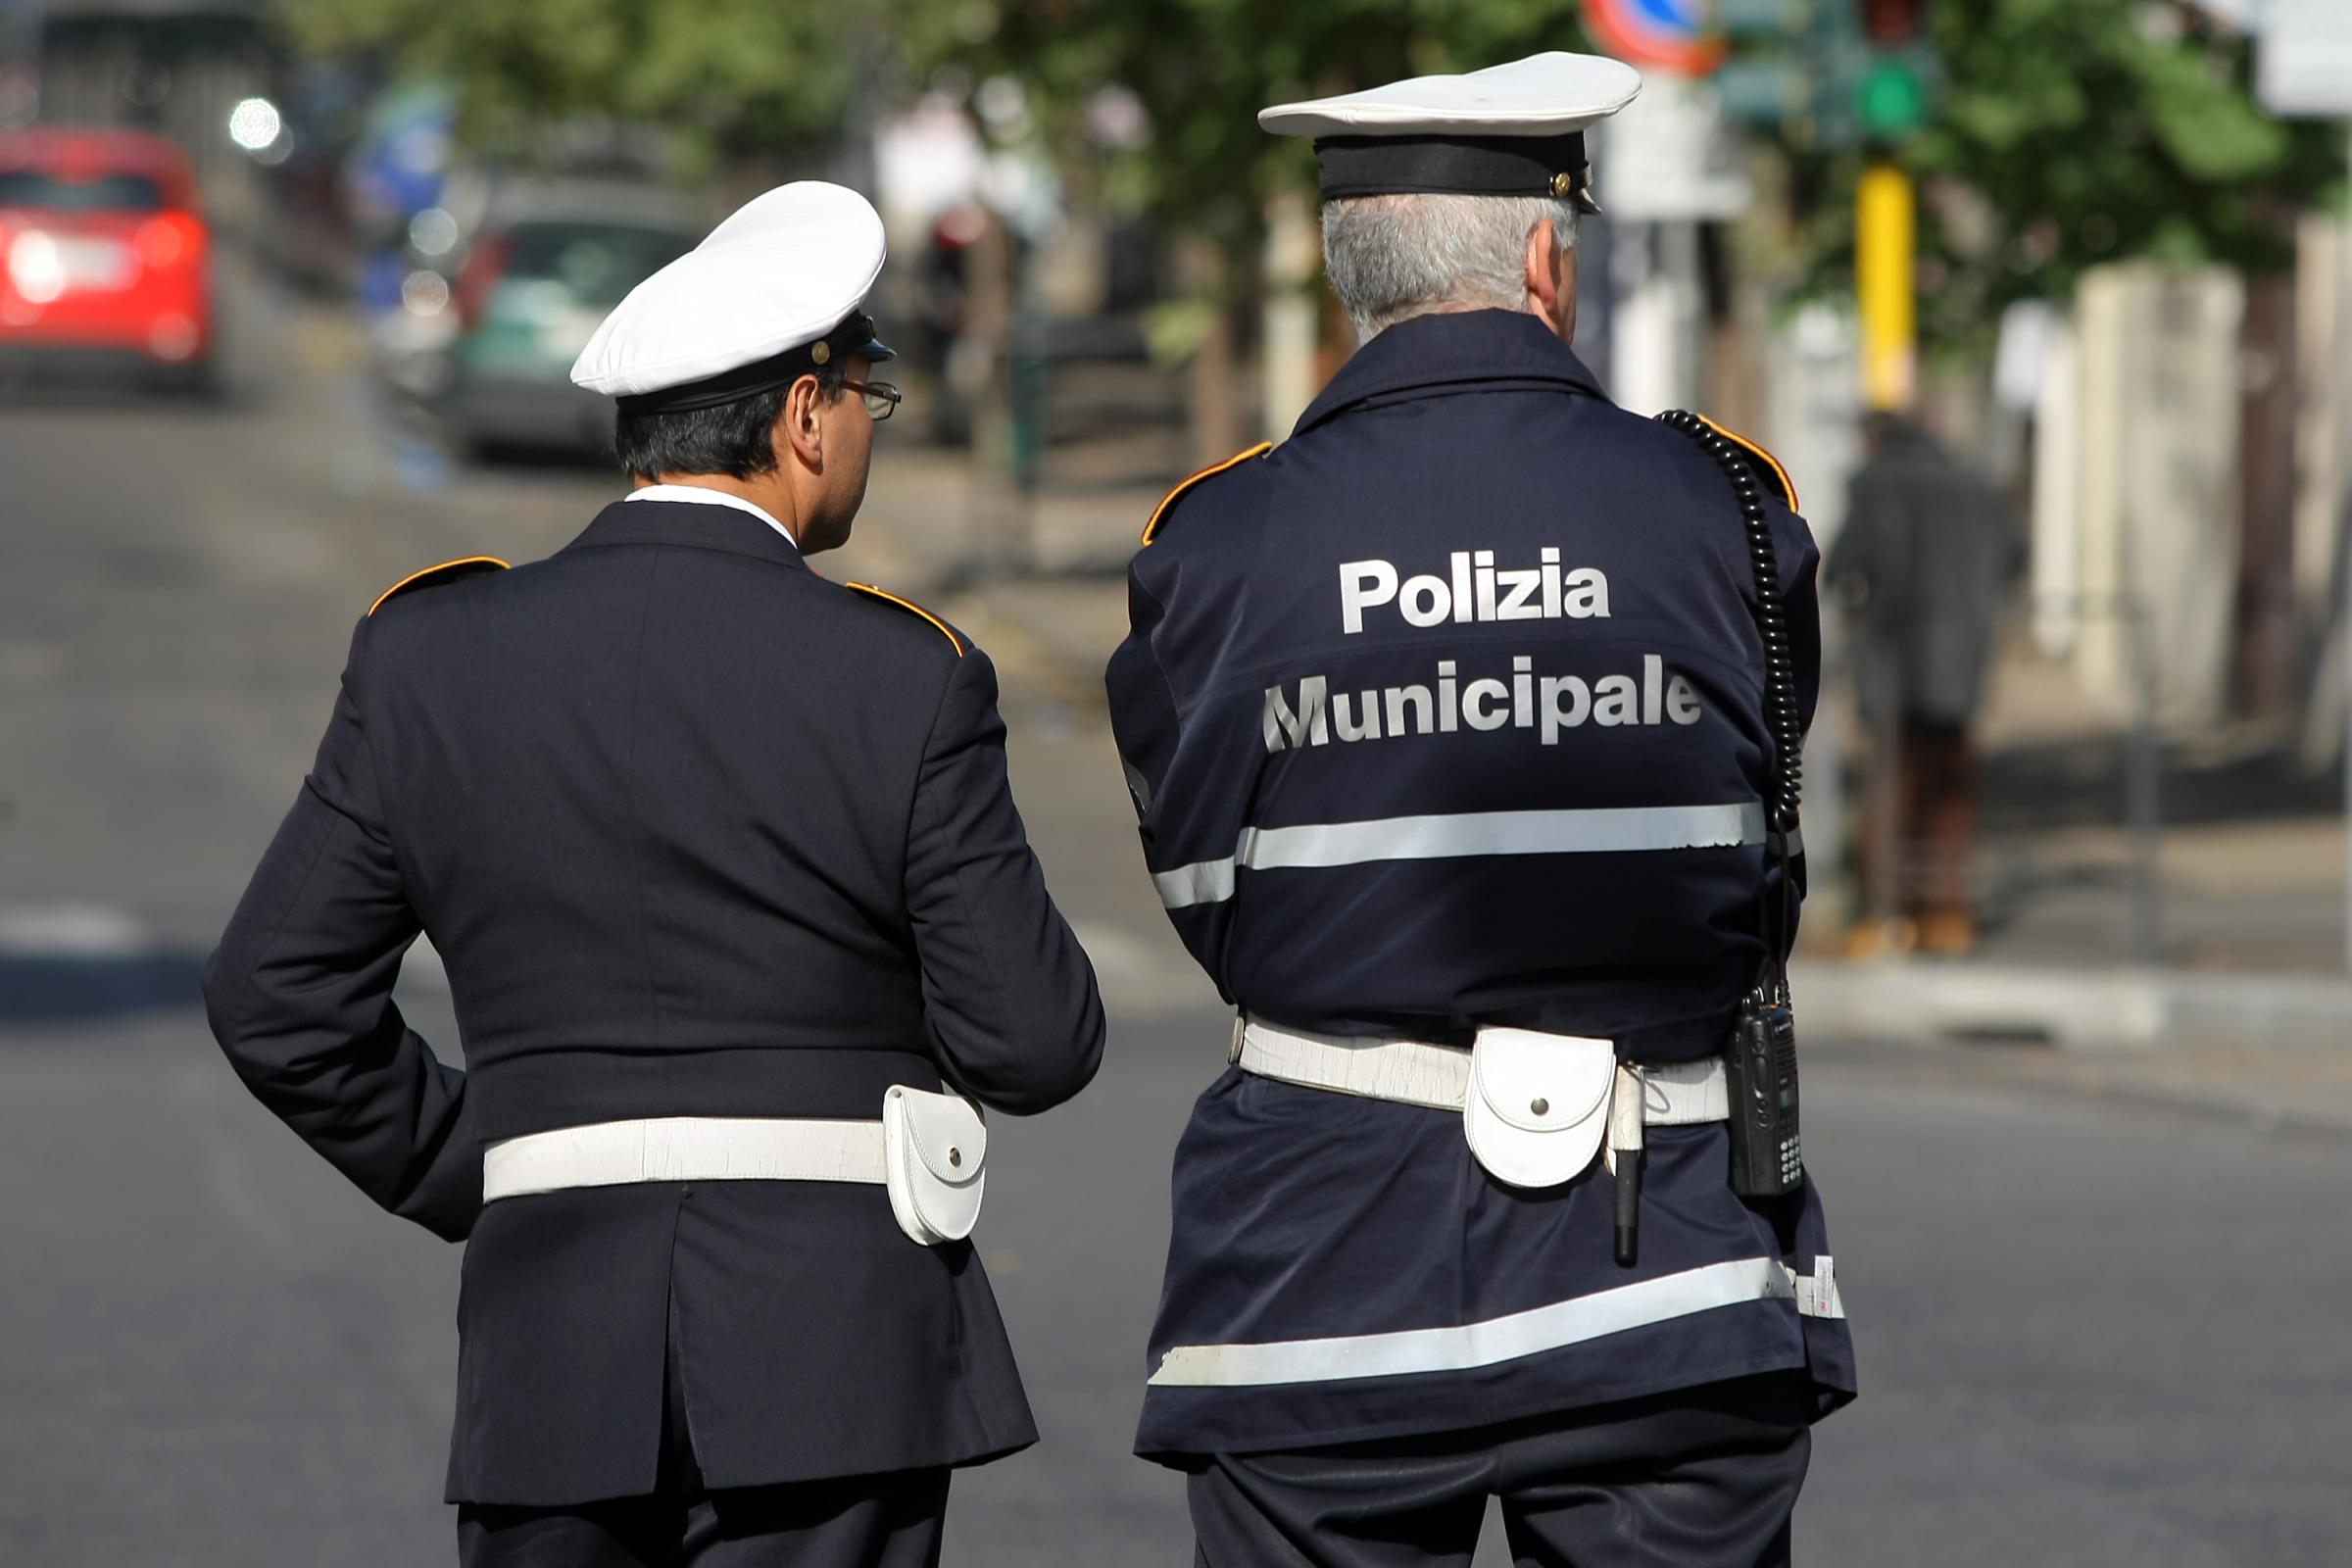 "A Catania pochi vigili urbani, il sindaco Bianco dovrebbe intervenire"